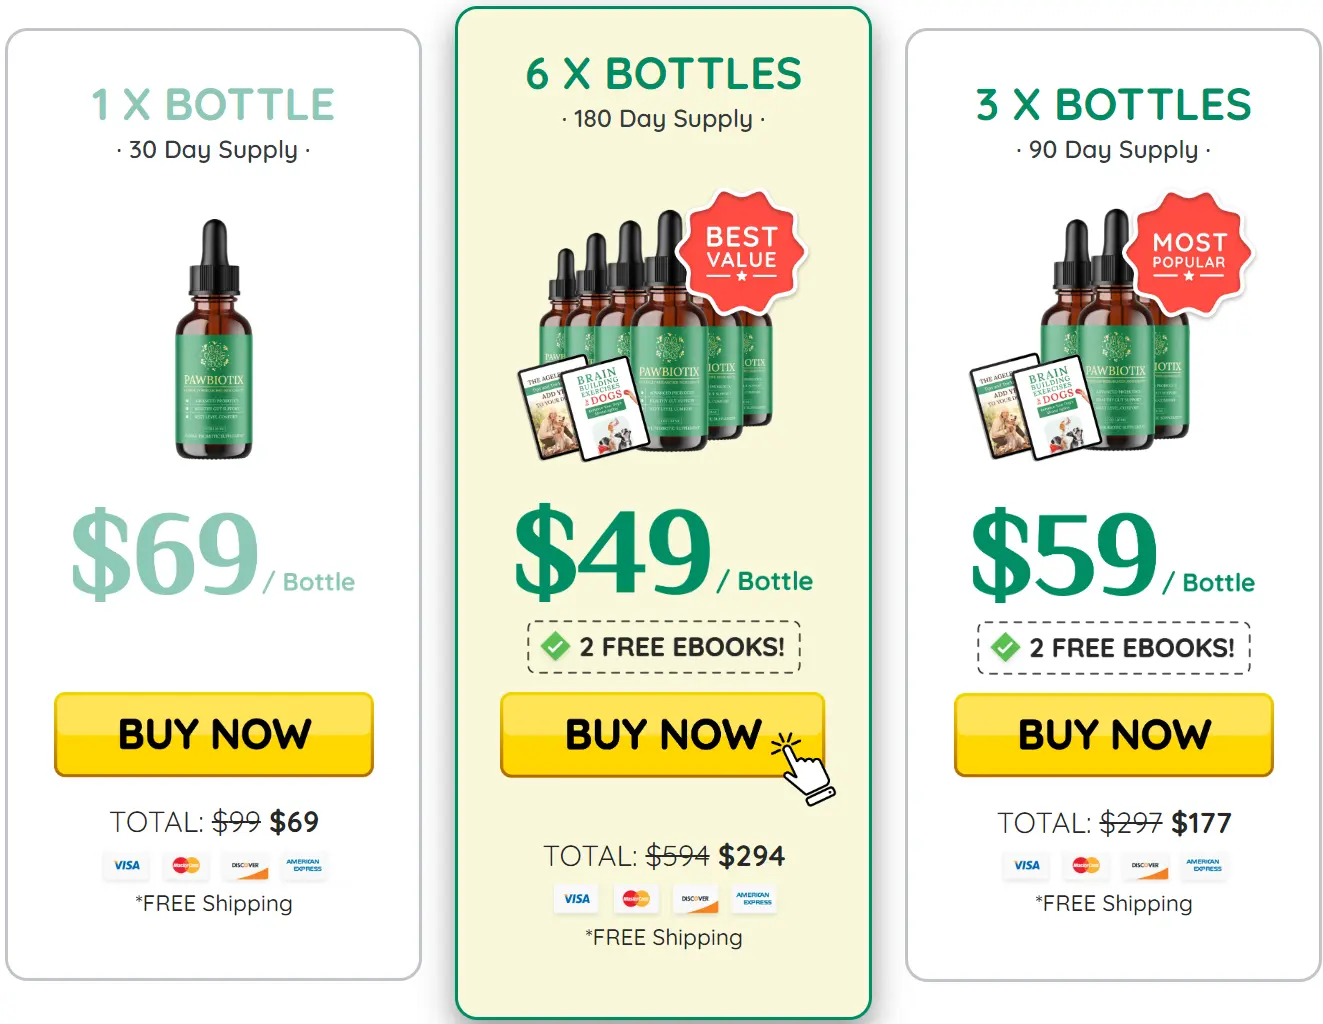 PawBiotix bottle pricing